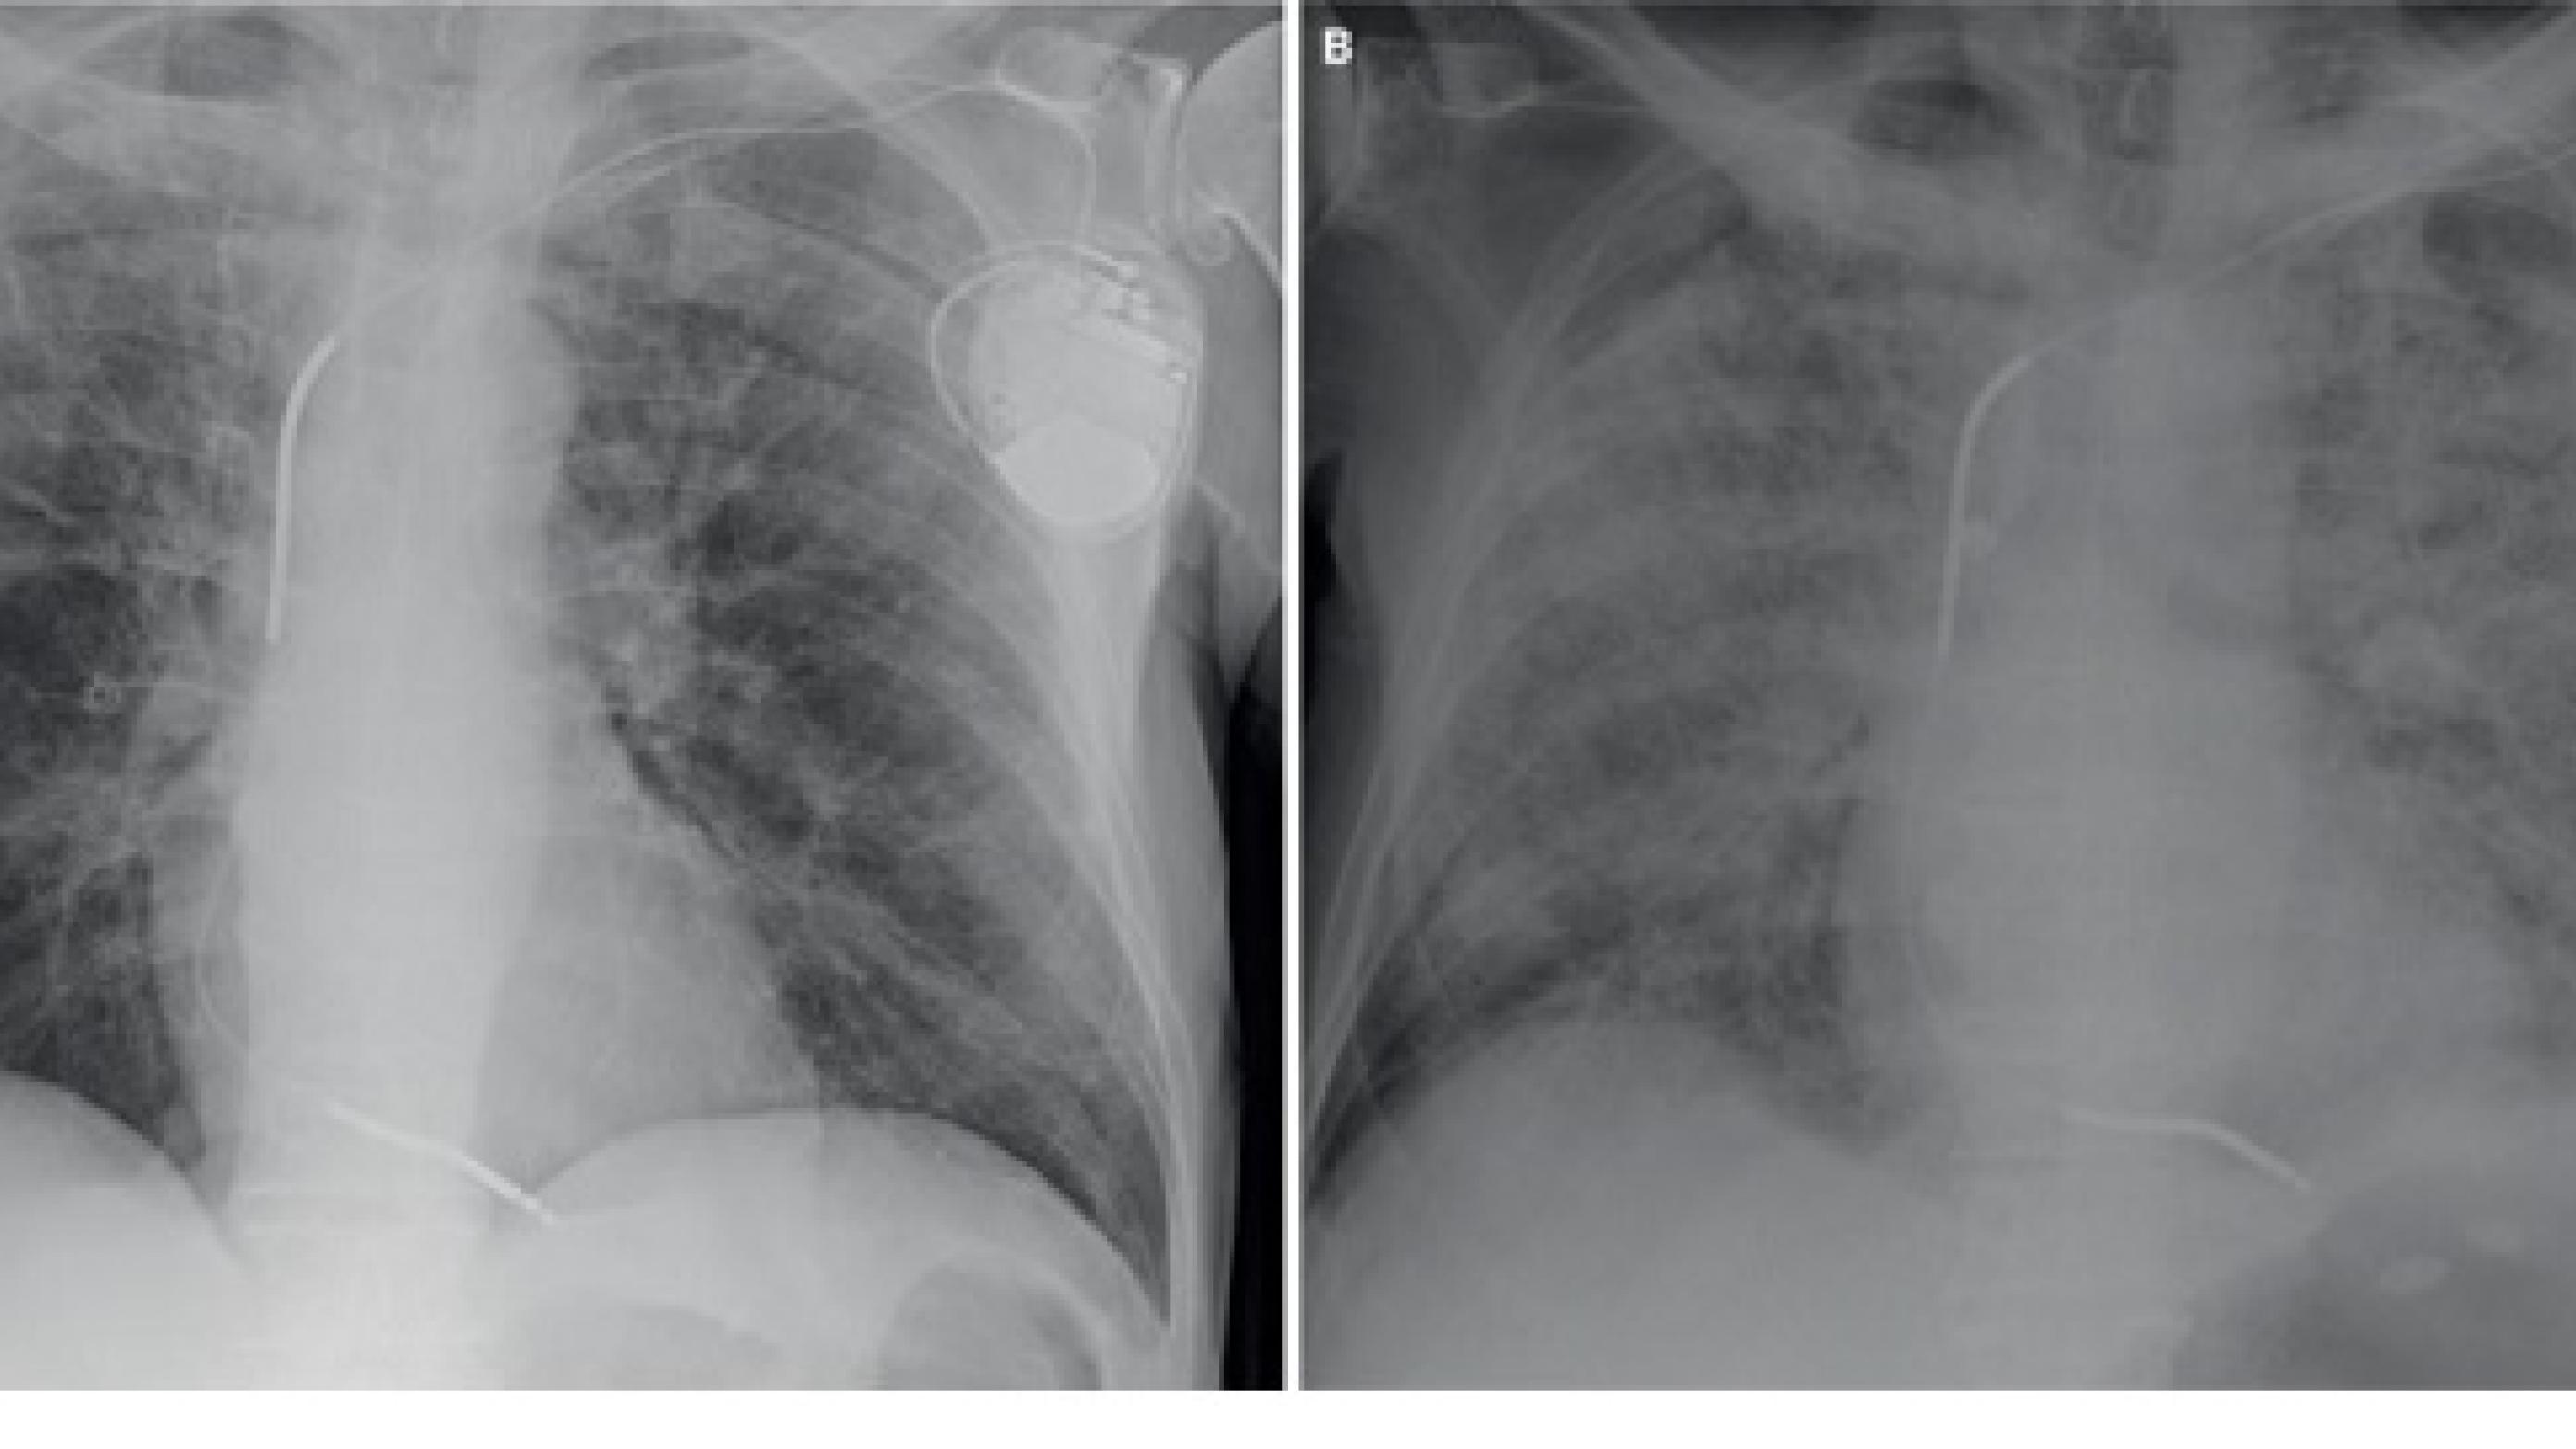 Røntgenbilleder af thorax af patienten i sygehistorie II.